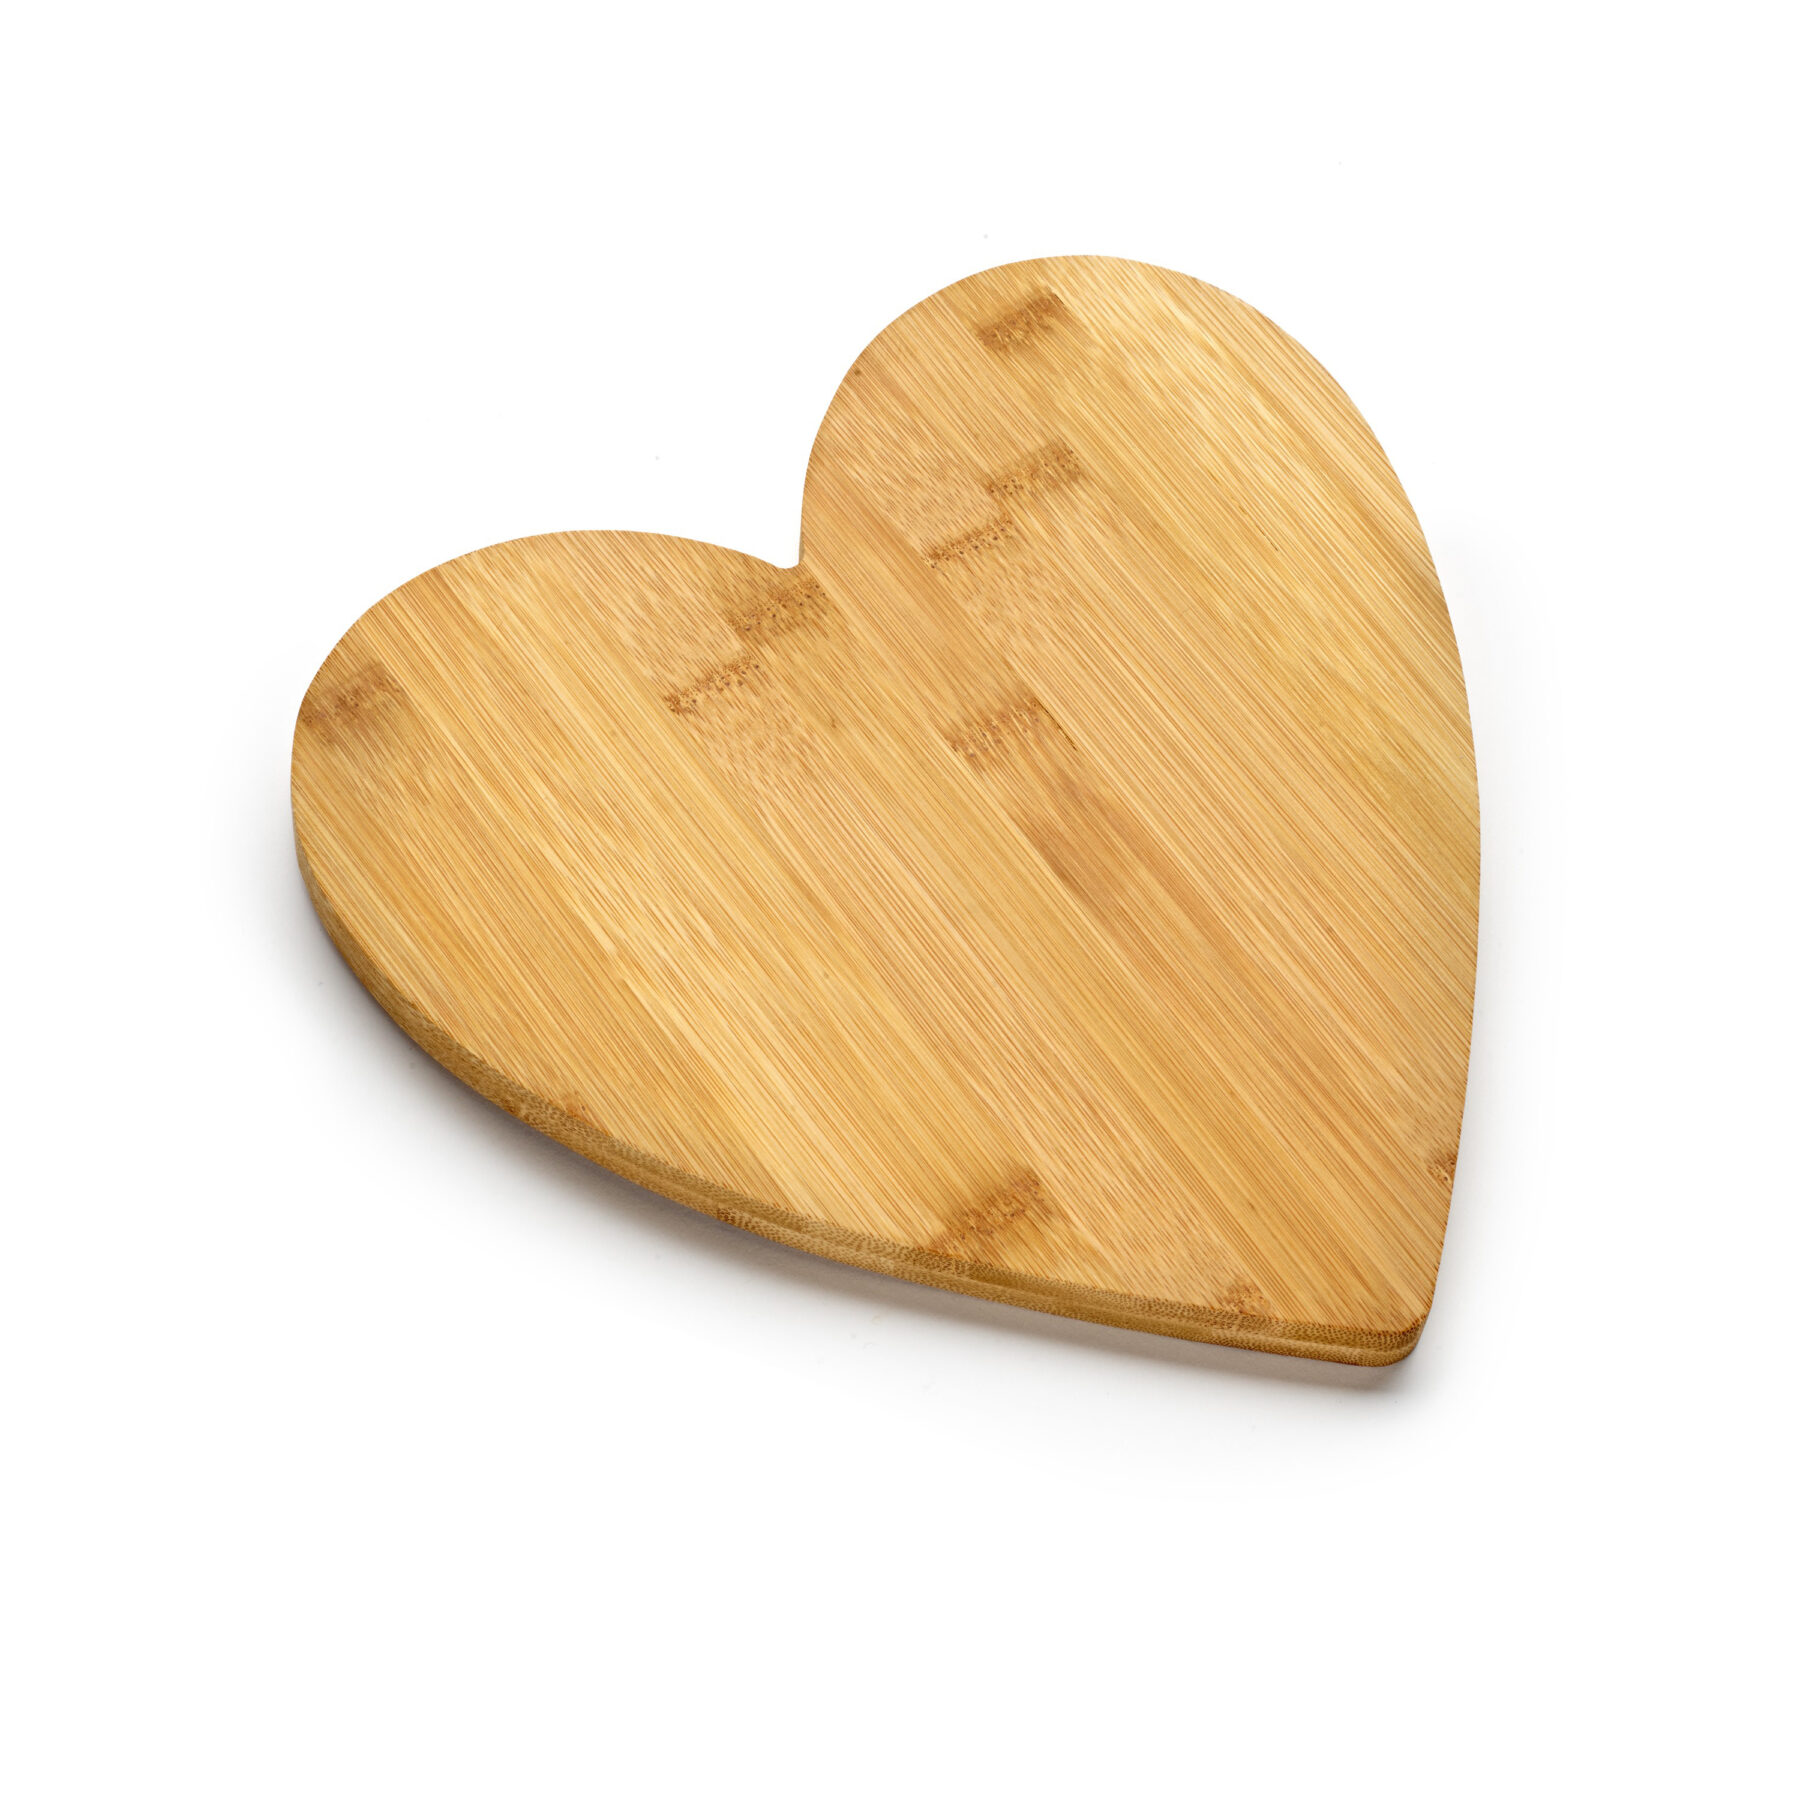 Heart Bamboo Board